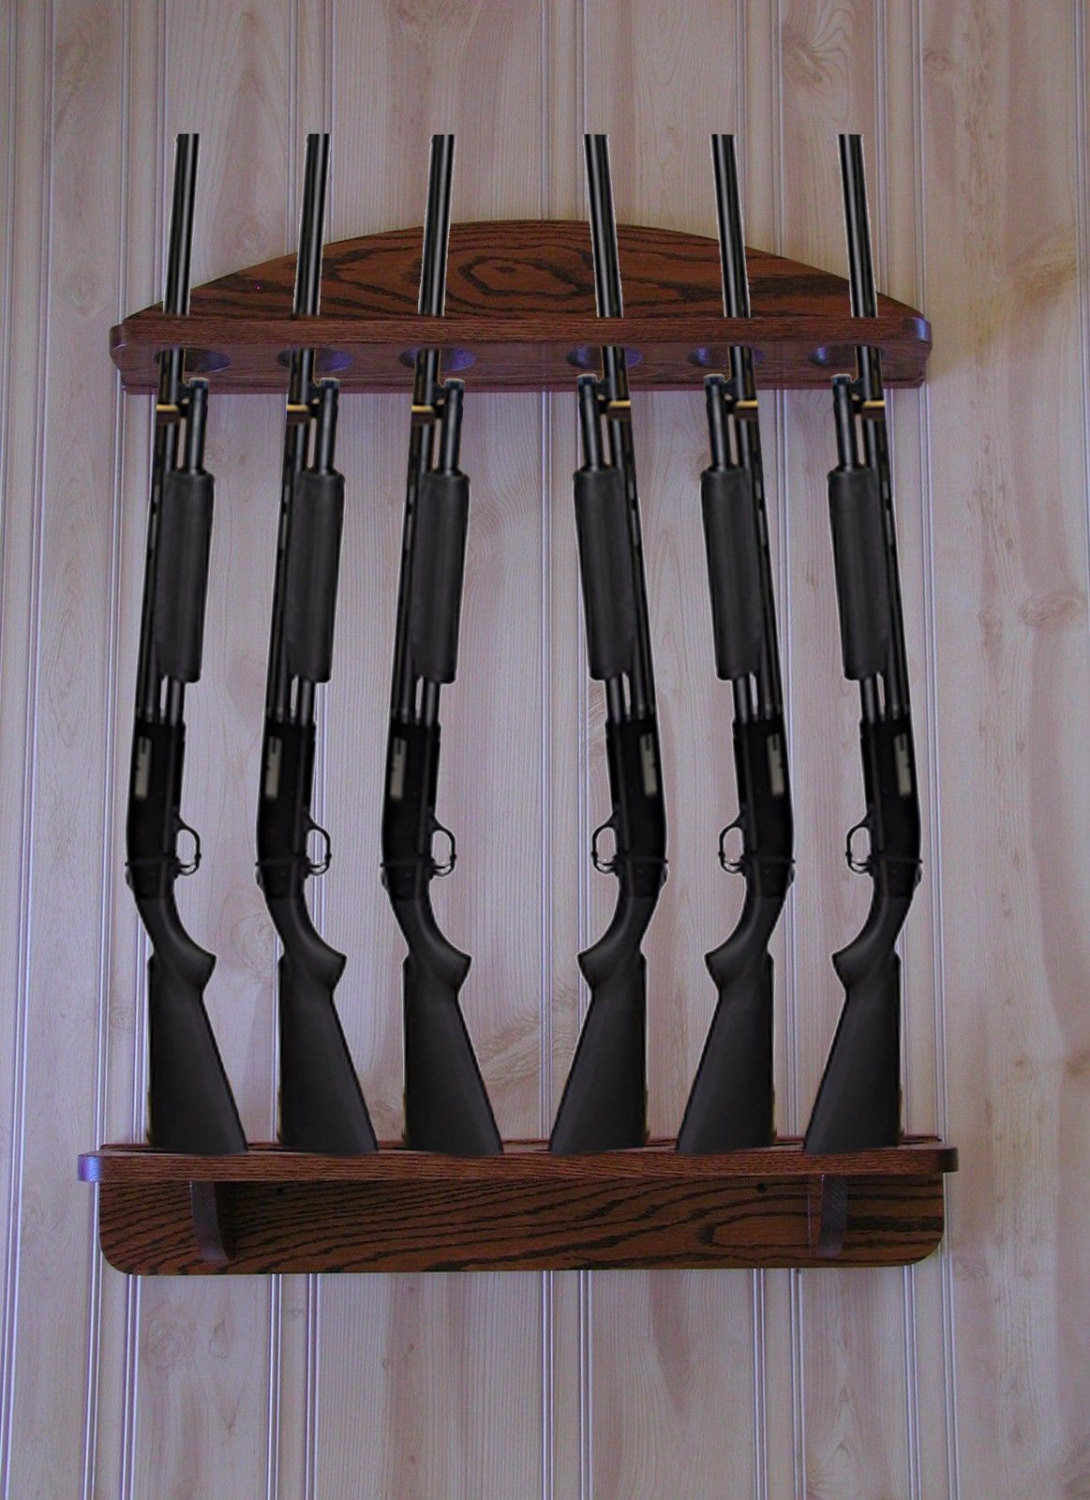 Best ideas about Vertical Wall Mount Gun Rack
. Save or Pin Gun Rack 6 gun vertical Wall Display solid oak Now.